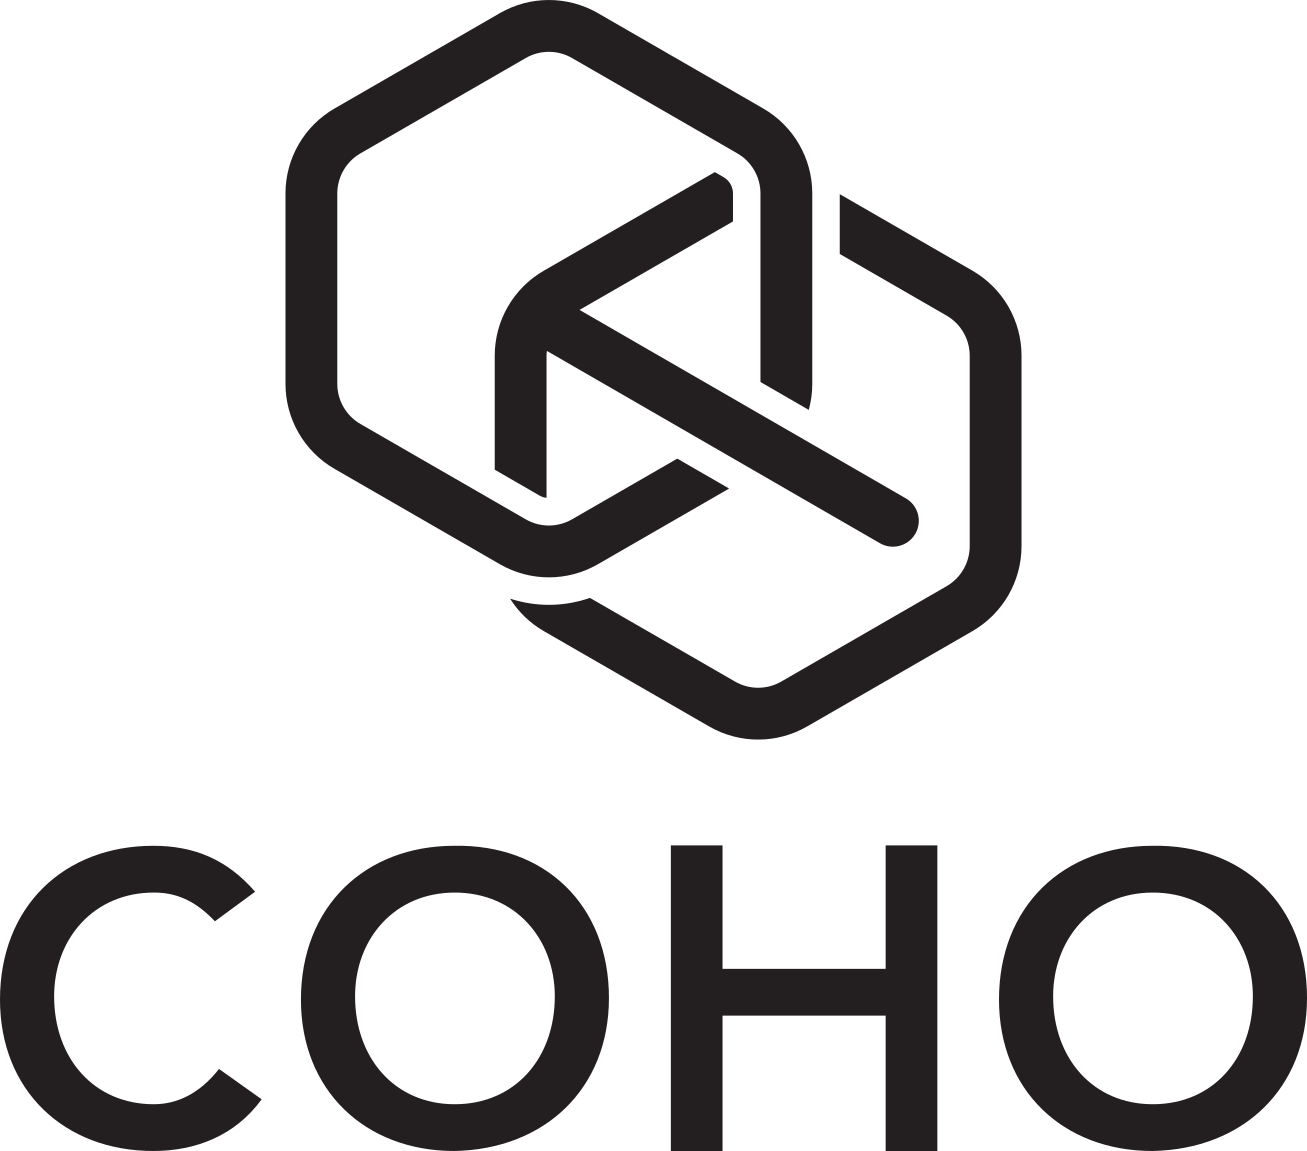 COHO company logo